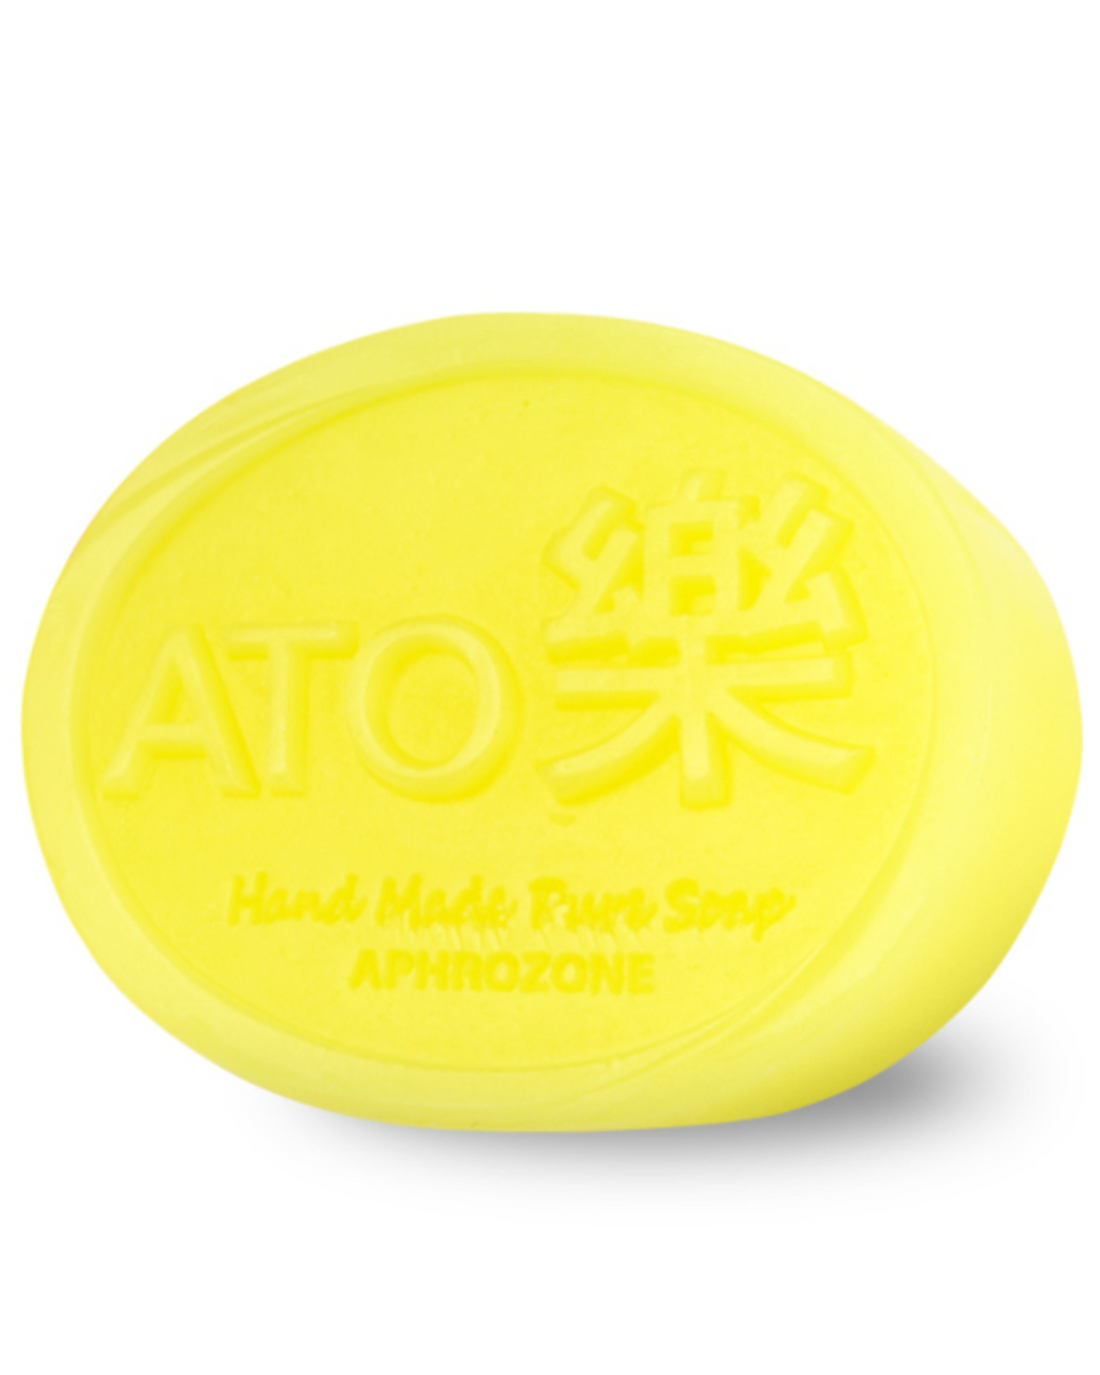 ATORAK Atopic Care Intensive Chamomile Atopic care Soap